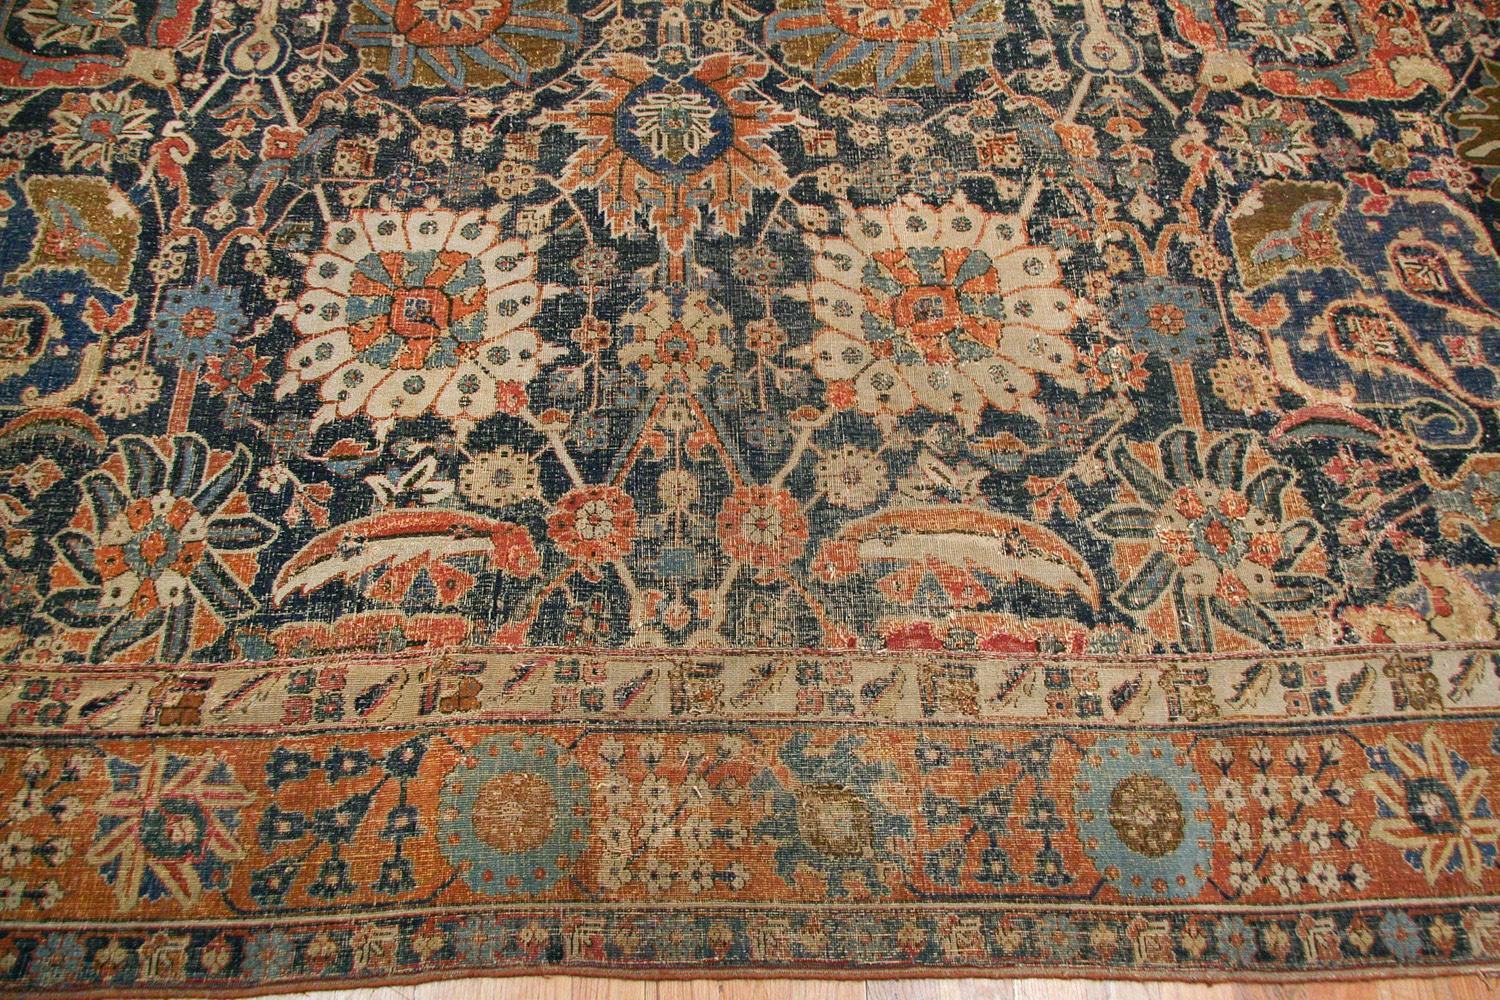 Rare Antique 17th century Kerman vase carpet, country of origin: Persia, circa 17th century. Size: 11 ft 5 in x 20 ft 2 in (3.48 m x 6.15 m). 

